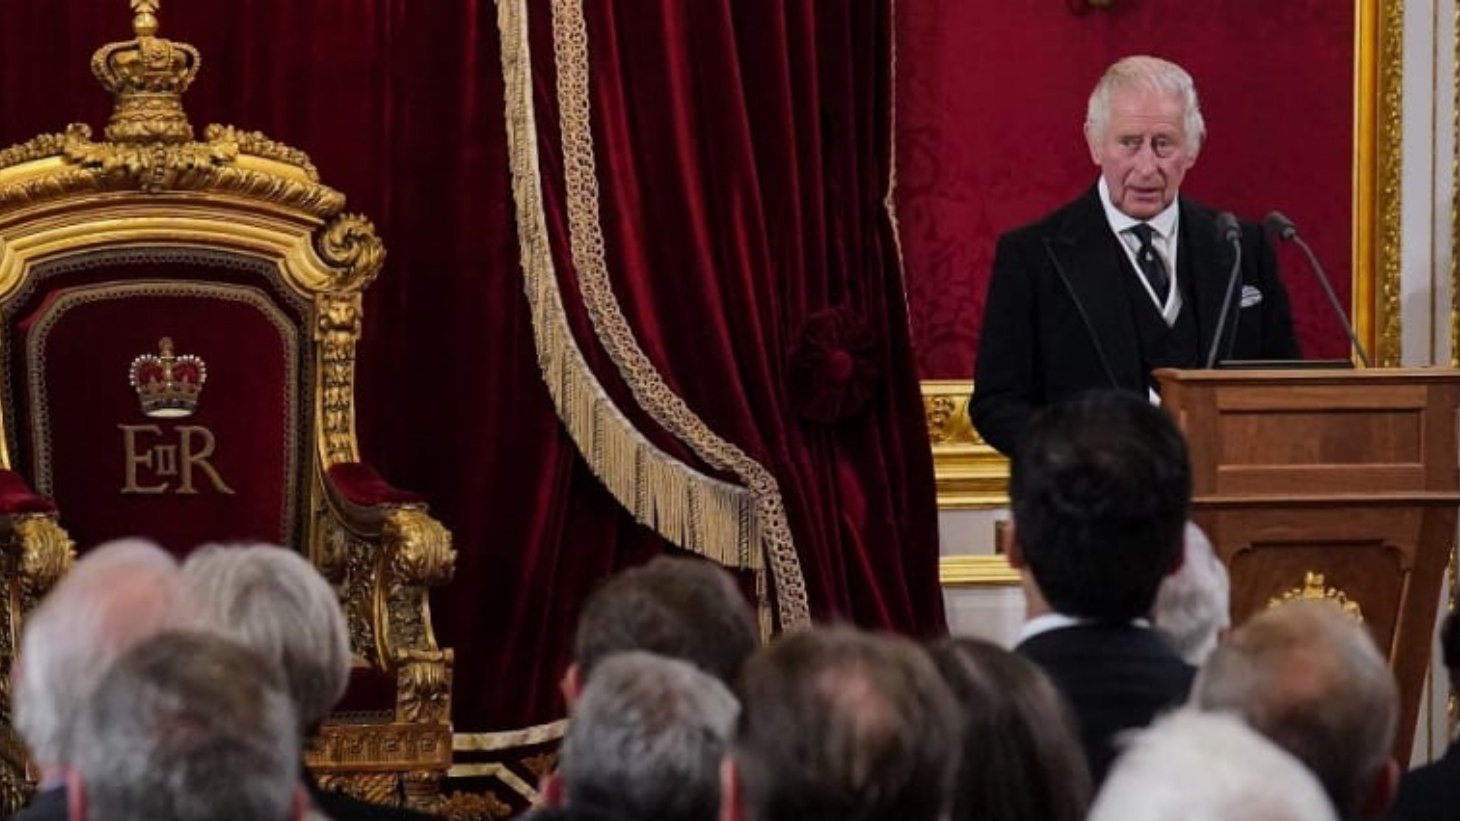 ملك بريطانيا تشارلز الثالث يتحدث خلال اجتماع لمجلس الانضمام في غرفة العرش داخل قصر سانت جيمس في لندن في 10 سبتمبر 2022، لإعلانه ملكًا جديدًا.